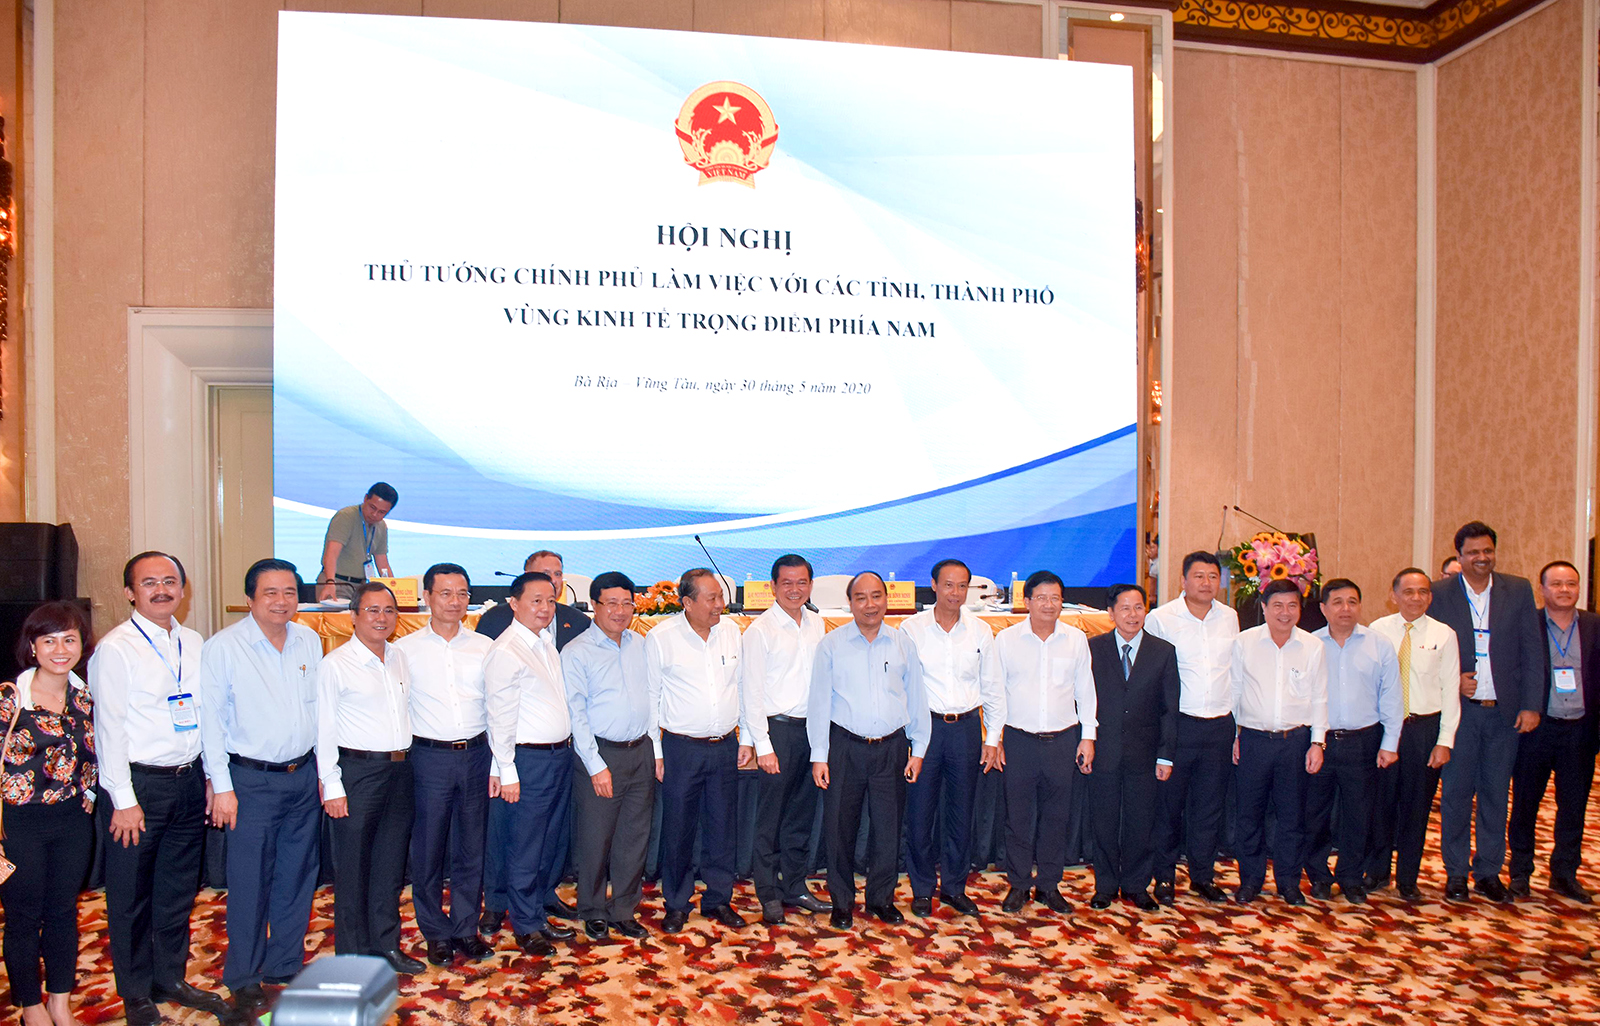 Thủ tướng Nguyễn Xuân Phúc chụp hình lưu niệm cùng các đại biểu tham dự Hội nghị.